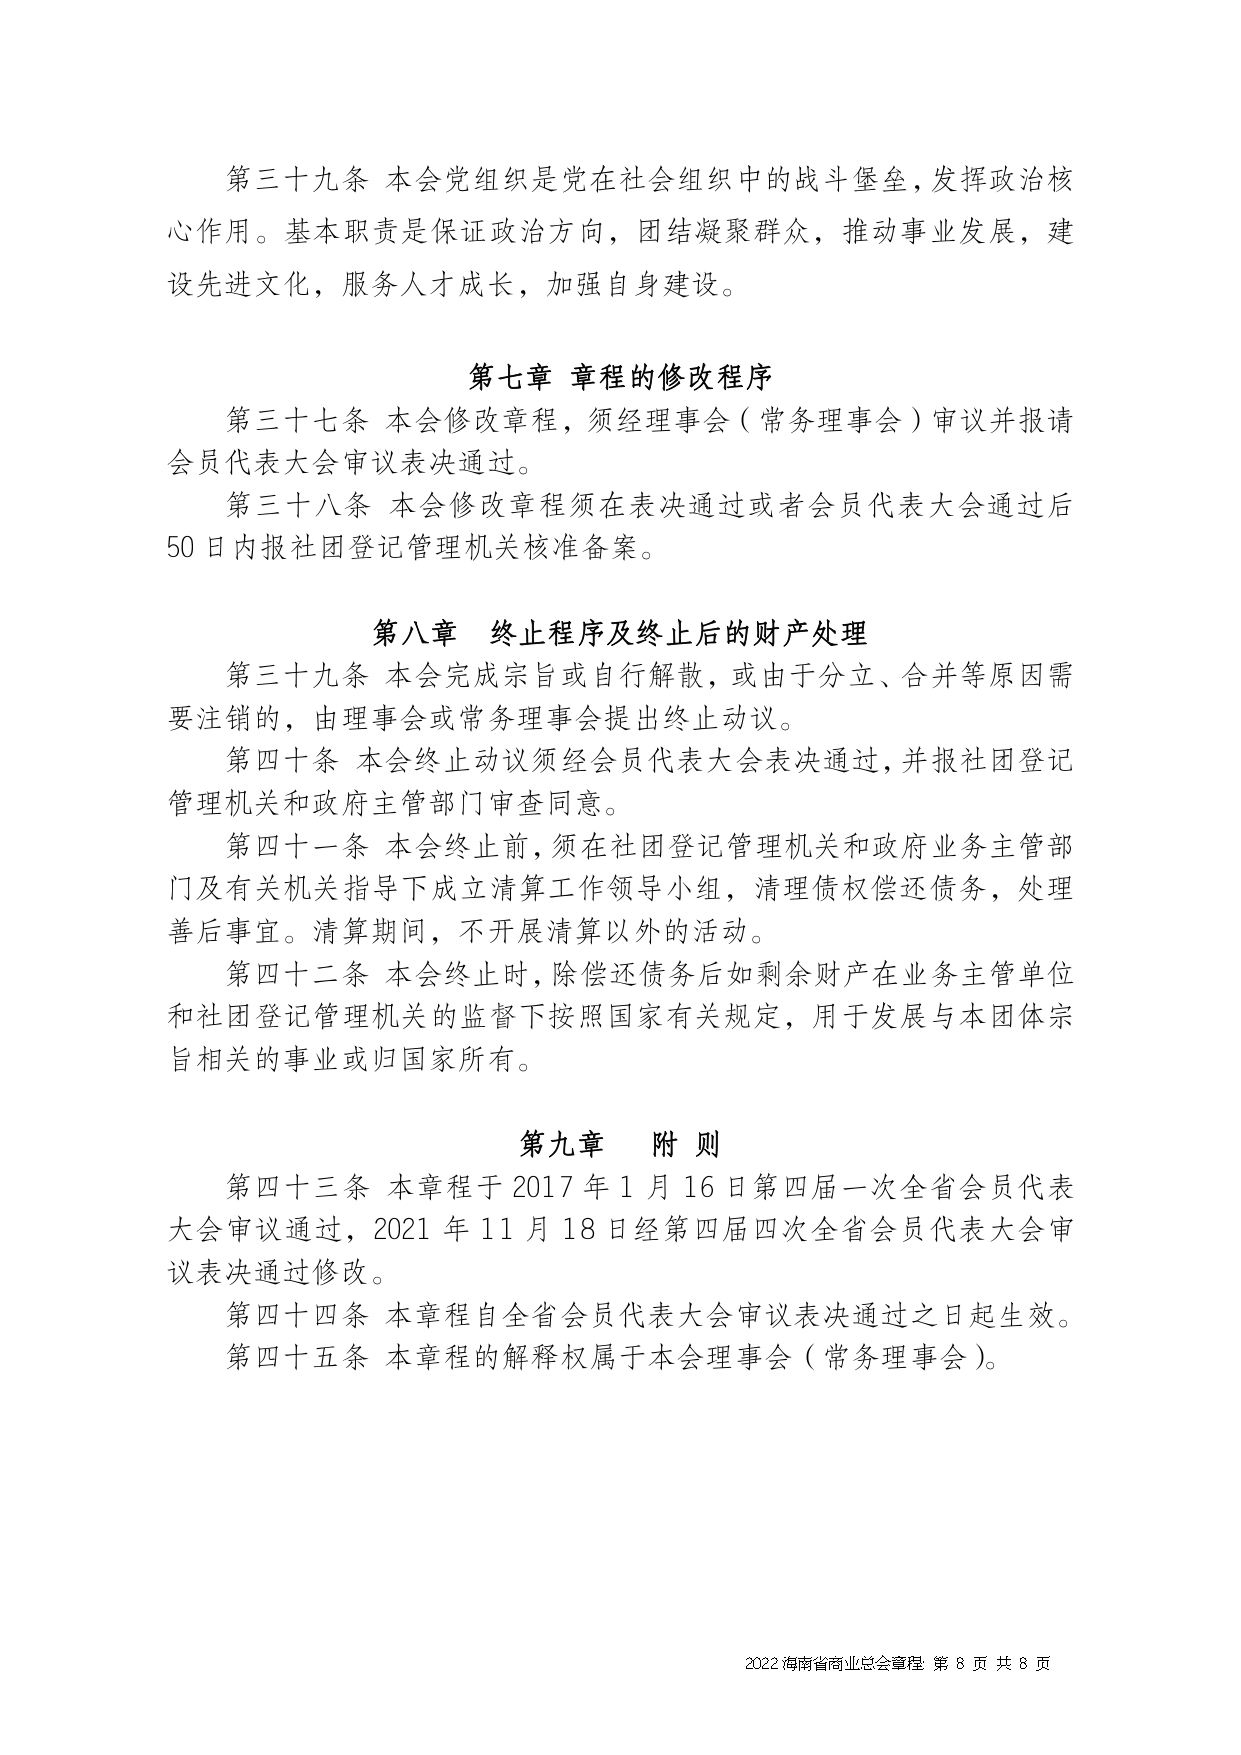 2022+海南省商业总会章程（修正版）-1_page-0008.jpg